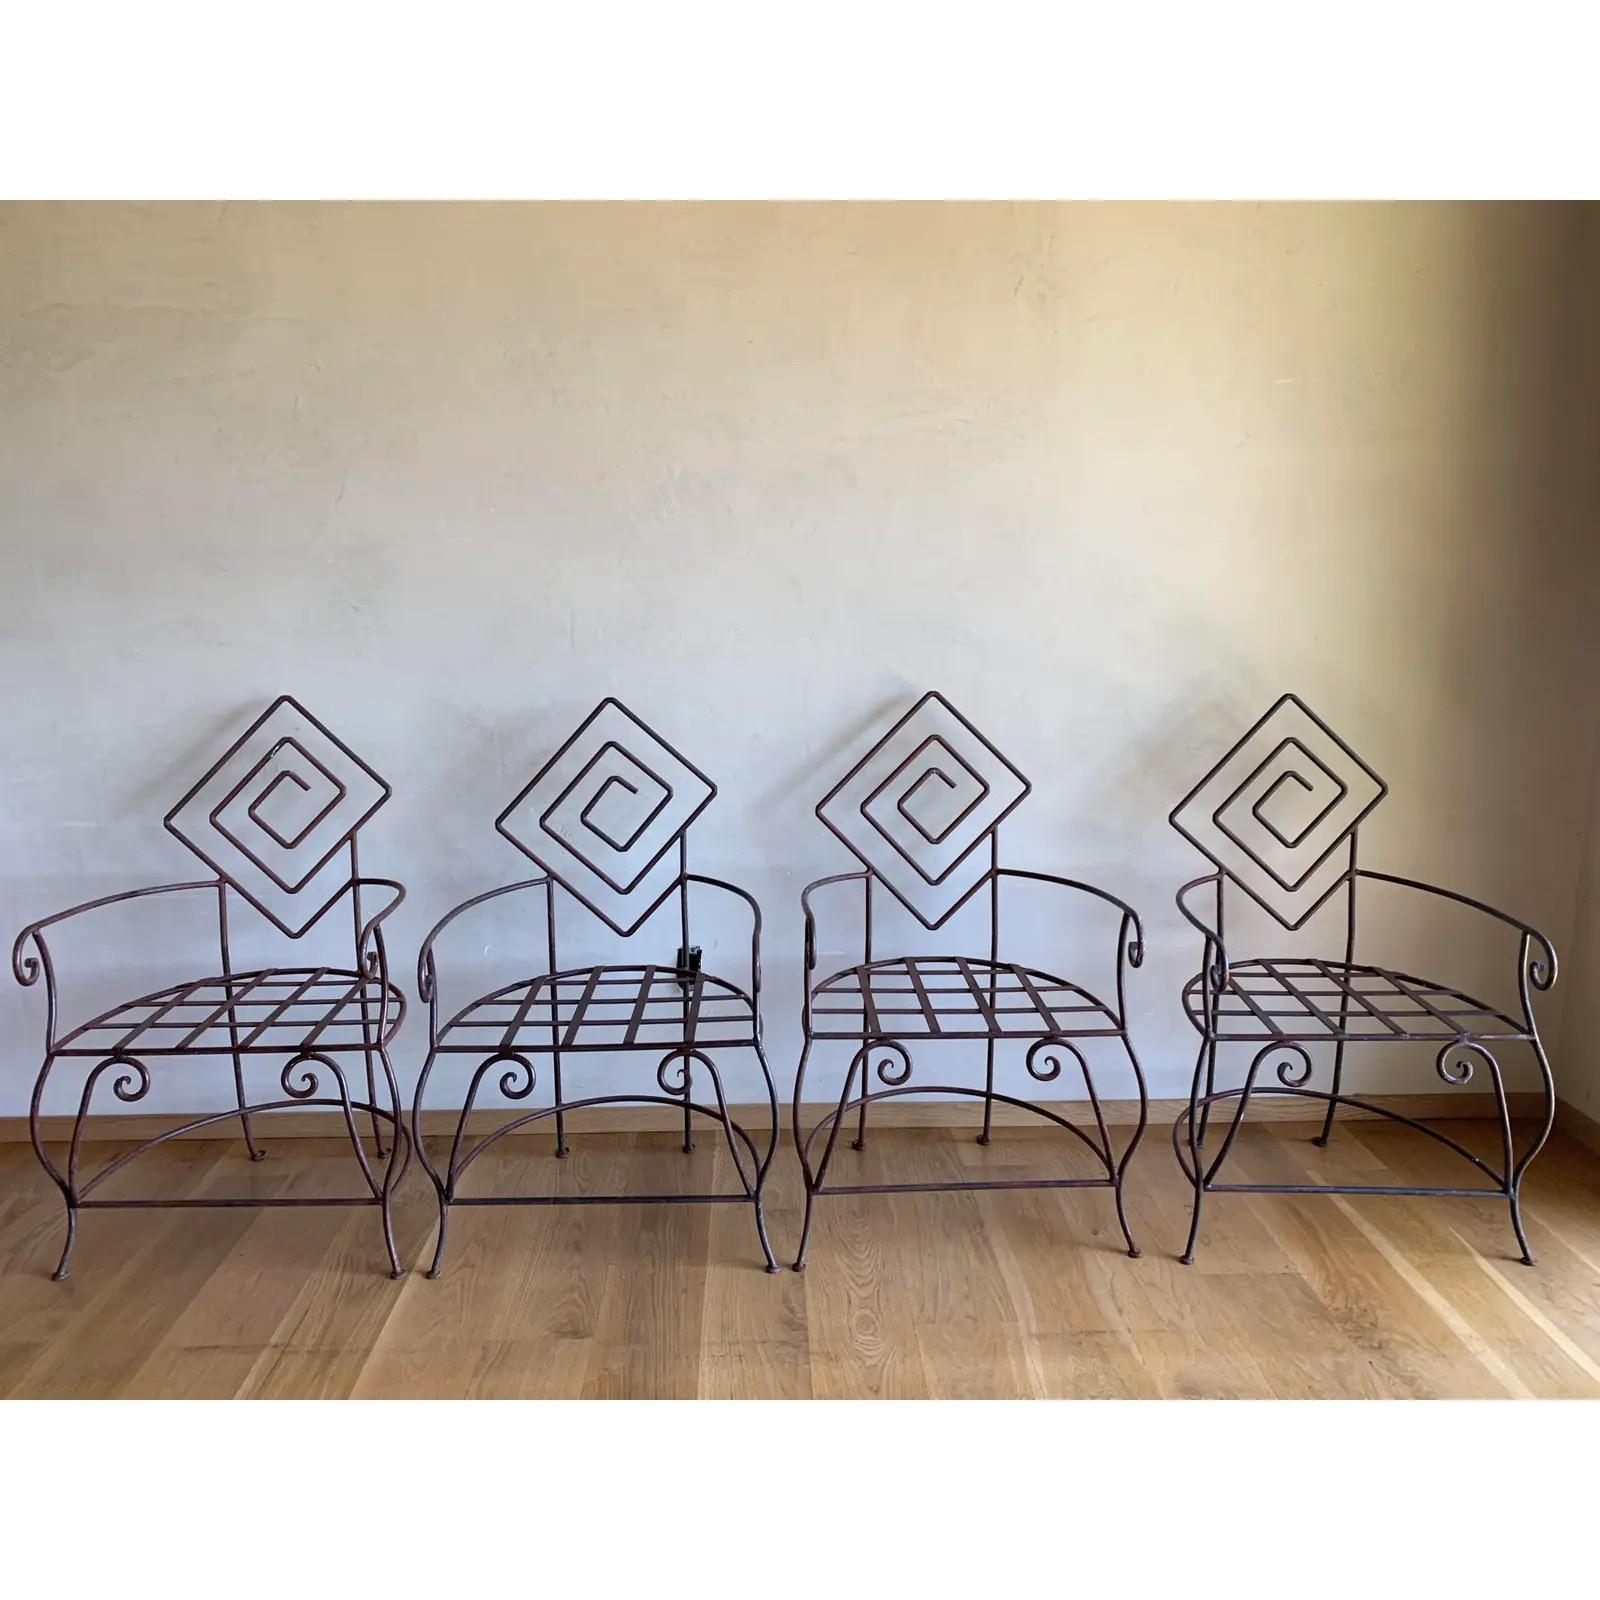 Ensemble de quatre chaises en fer très sculpturales et robustes, fabriquées à la main par des artisans, avec des accoudoirs et des pieds biomorphiques larges et courbés, culminant dans des dossiers géométriques en forme de labyrinthe.
Des pièces